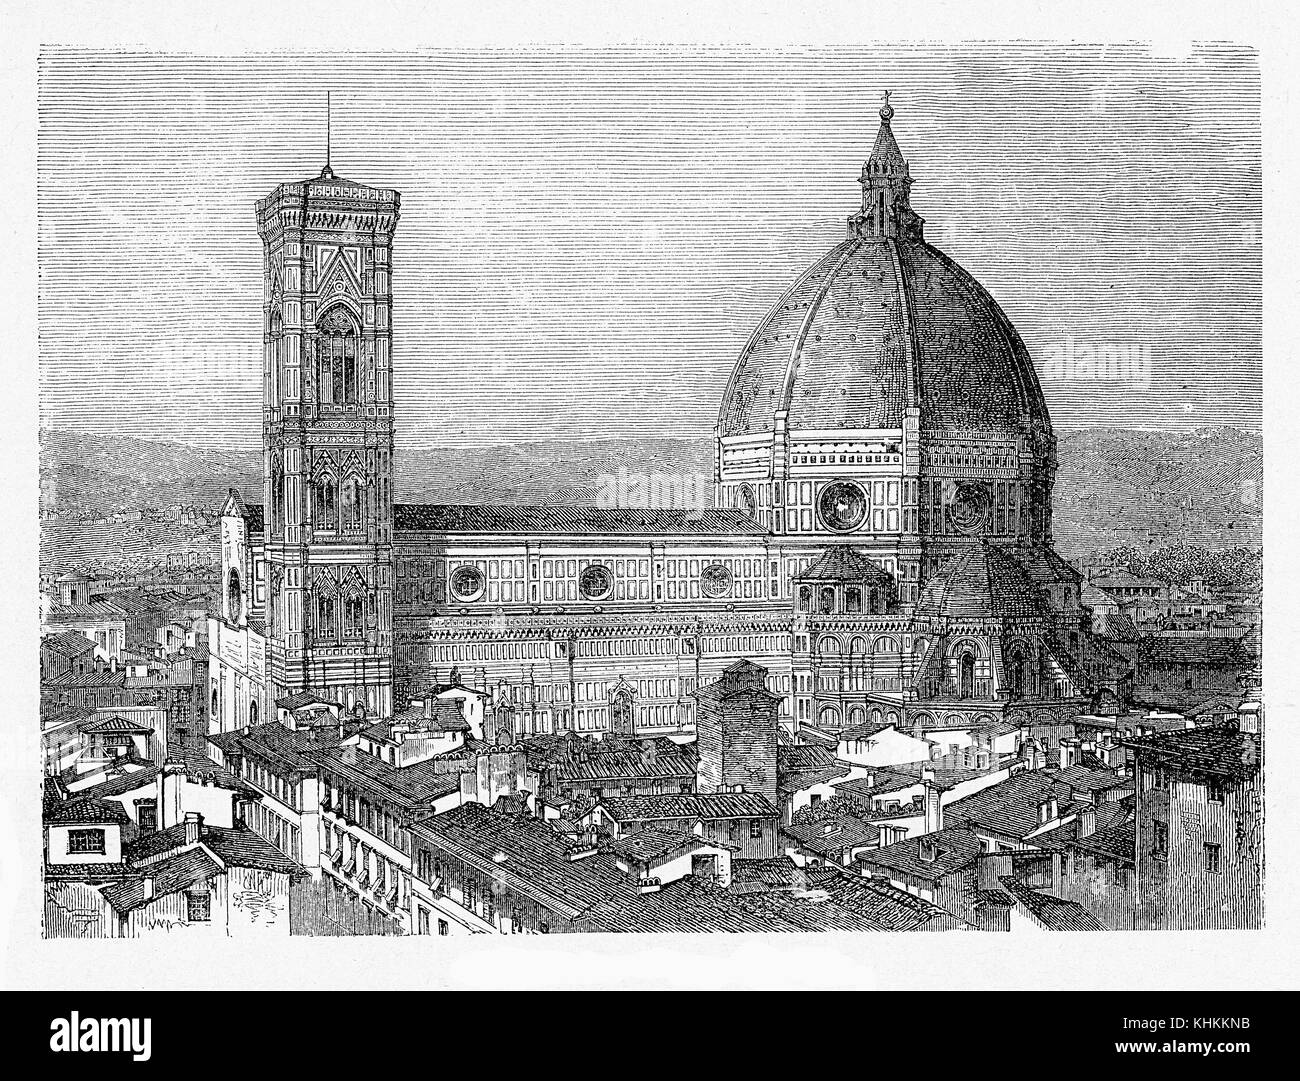 Kathedrale von Florenz mit dem freistehenden campanile von Giotto und der Kuppel von Brunelleschi, erbaut im XIV Jahrhundert im florentinischen gotischen Stil Stockfoto